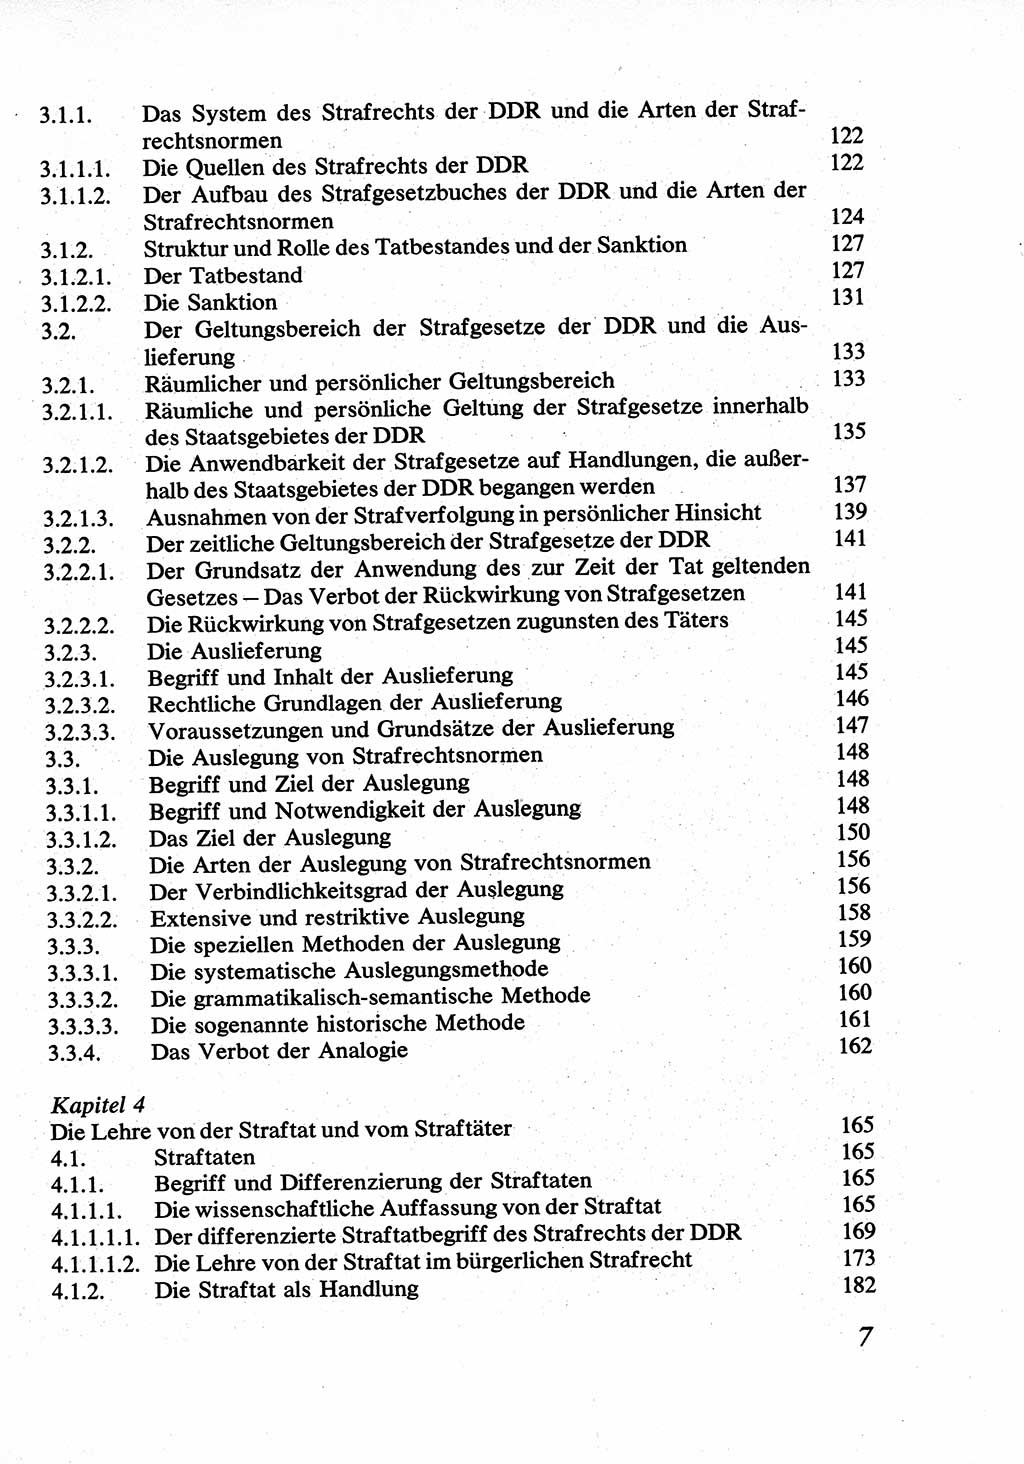 Strafrecht [Deutsche Demokratische Republik (DDR)], Allgemeiner Teil, Lehrbuch 1976, Seite 7 (Strafr. DDR AT Lb. 1976, S. 7)